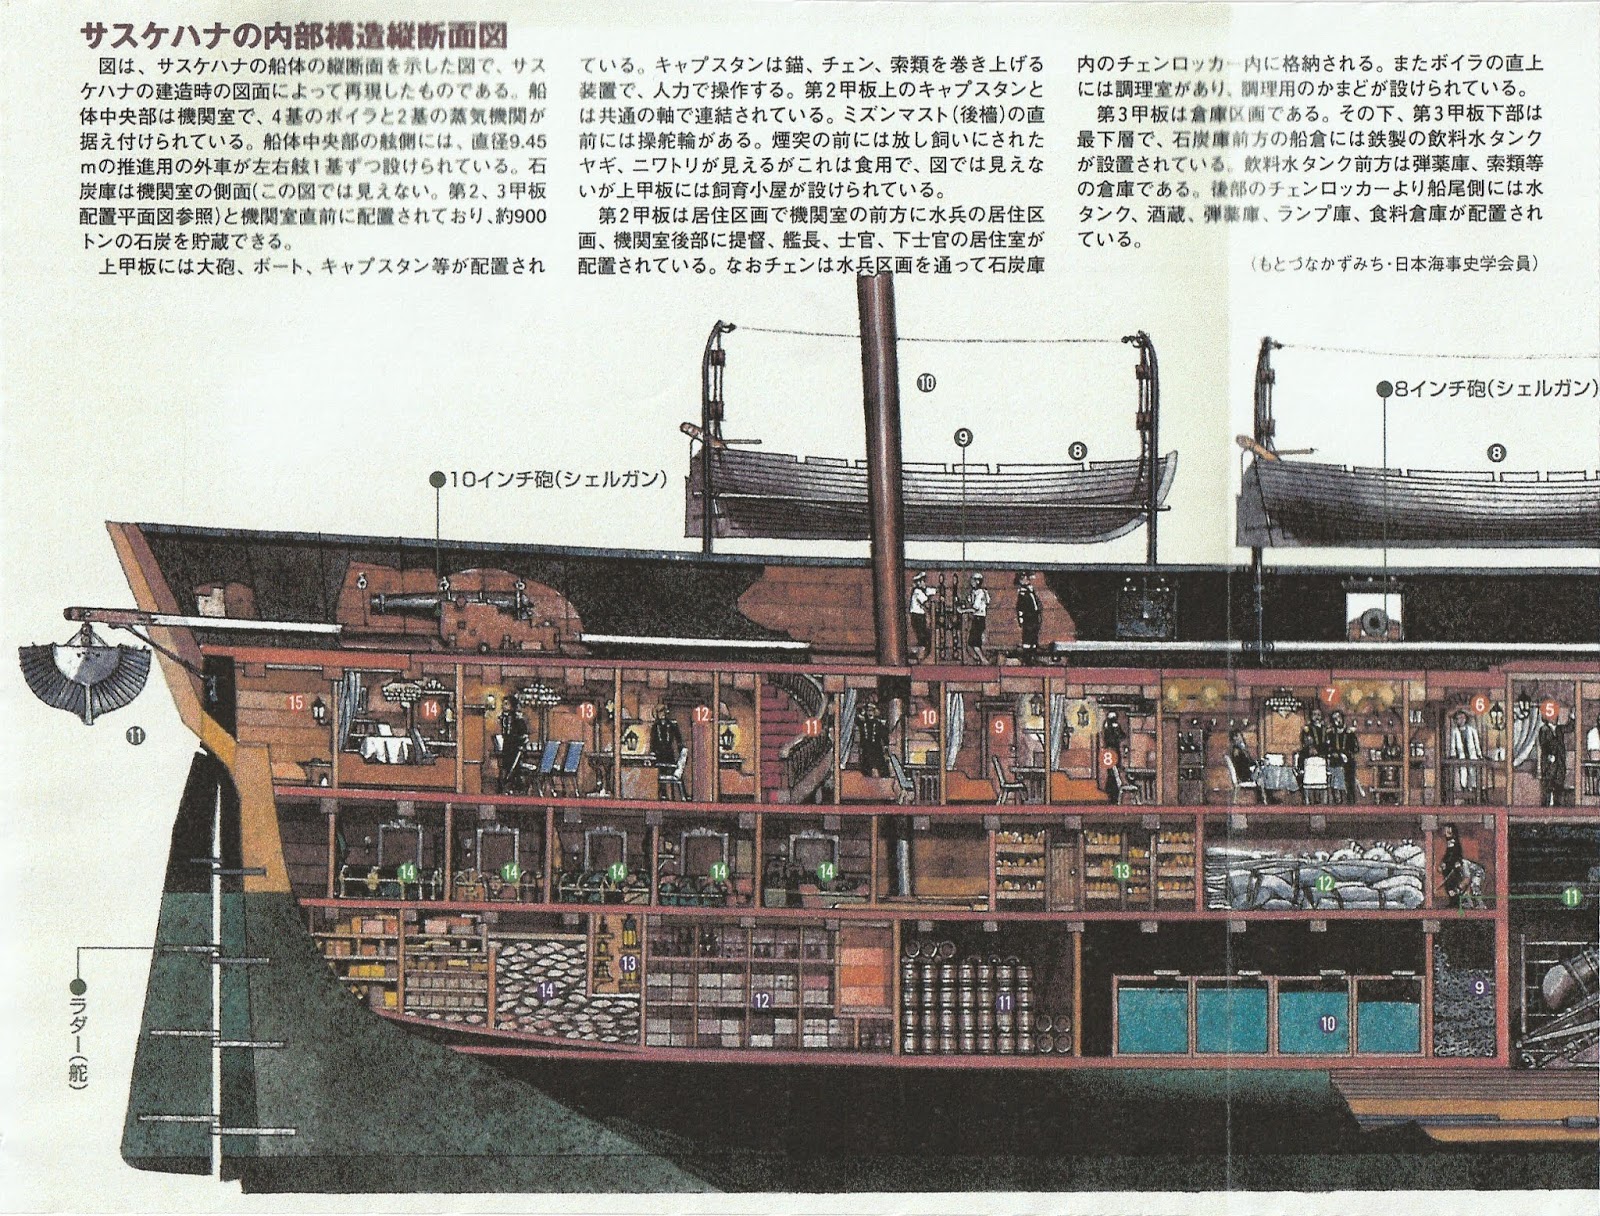 横須賀散策 黒船艦隊 旗艦サスケハナ号 復元図